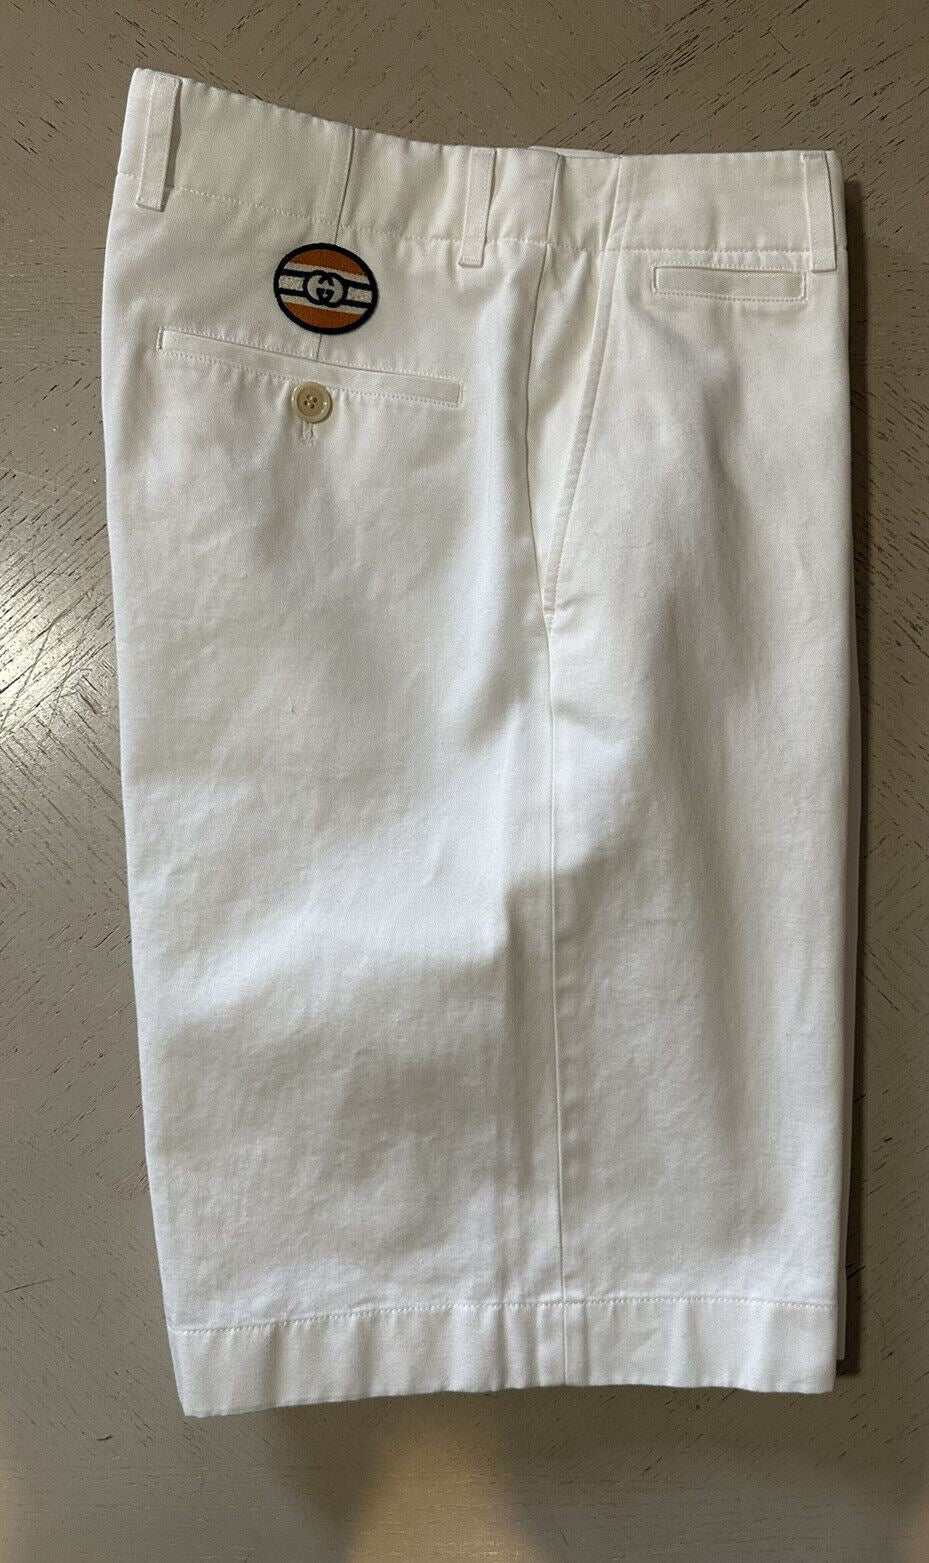 NWT $880 Gucci Mens Military Cotton Short Pants Color Milk 30 US/46 Eu Italy